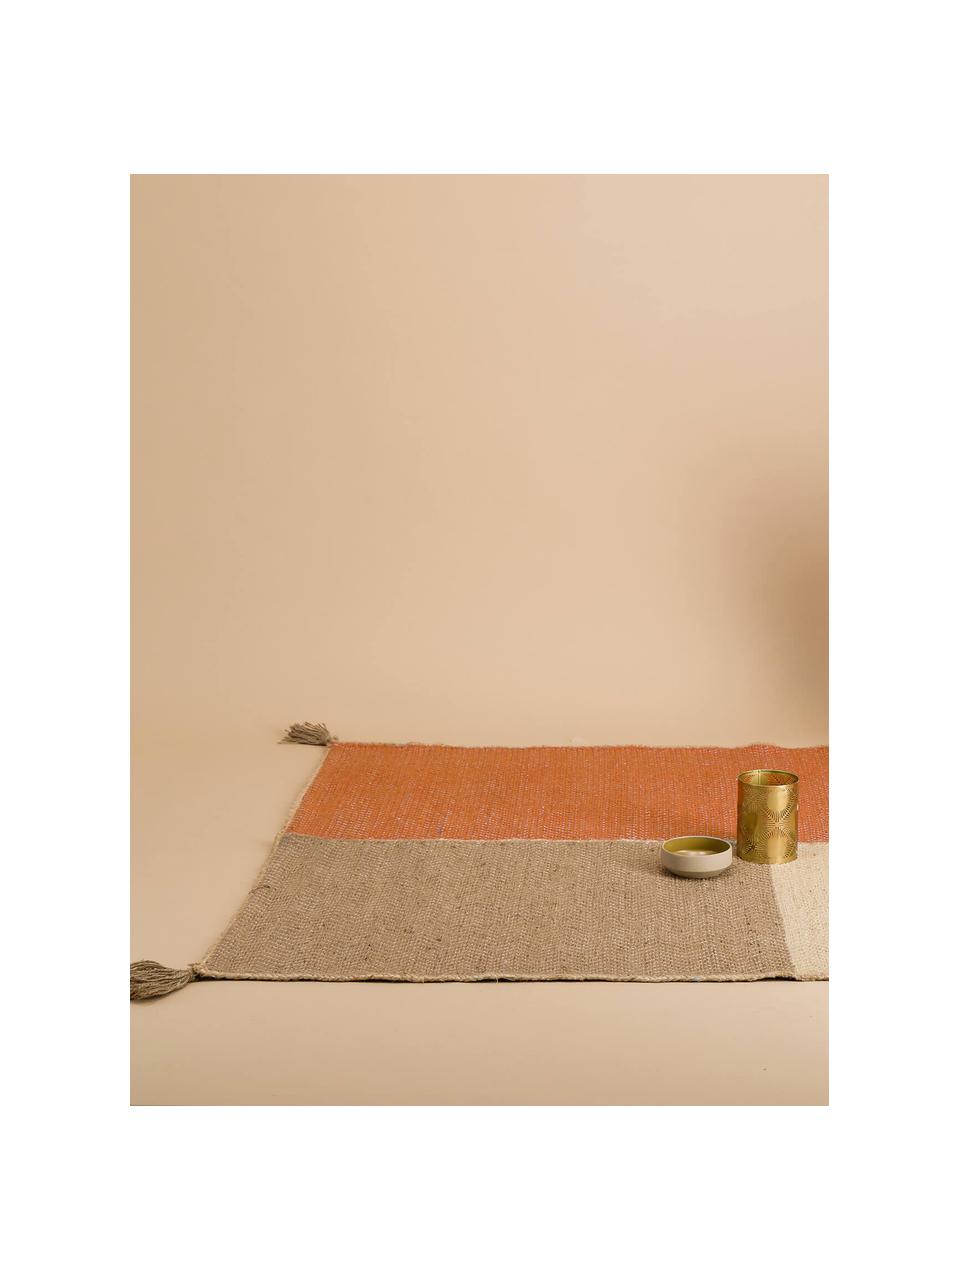 Alfombra de yute con borlas Maze, 100% yute, Rojo anaranjado, beige, gris, An 140 x L 200 cm (Tamaño S)